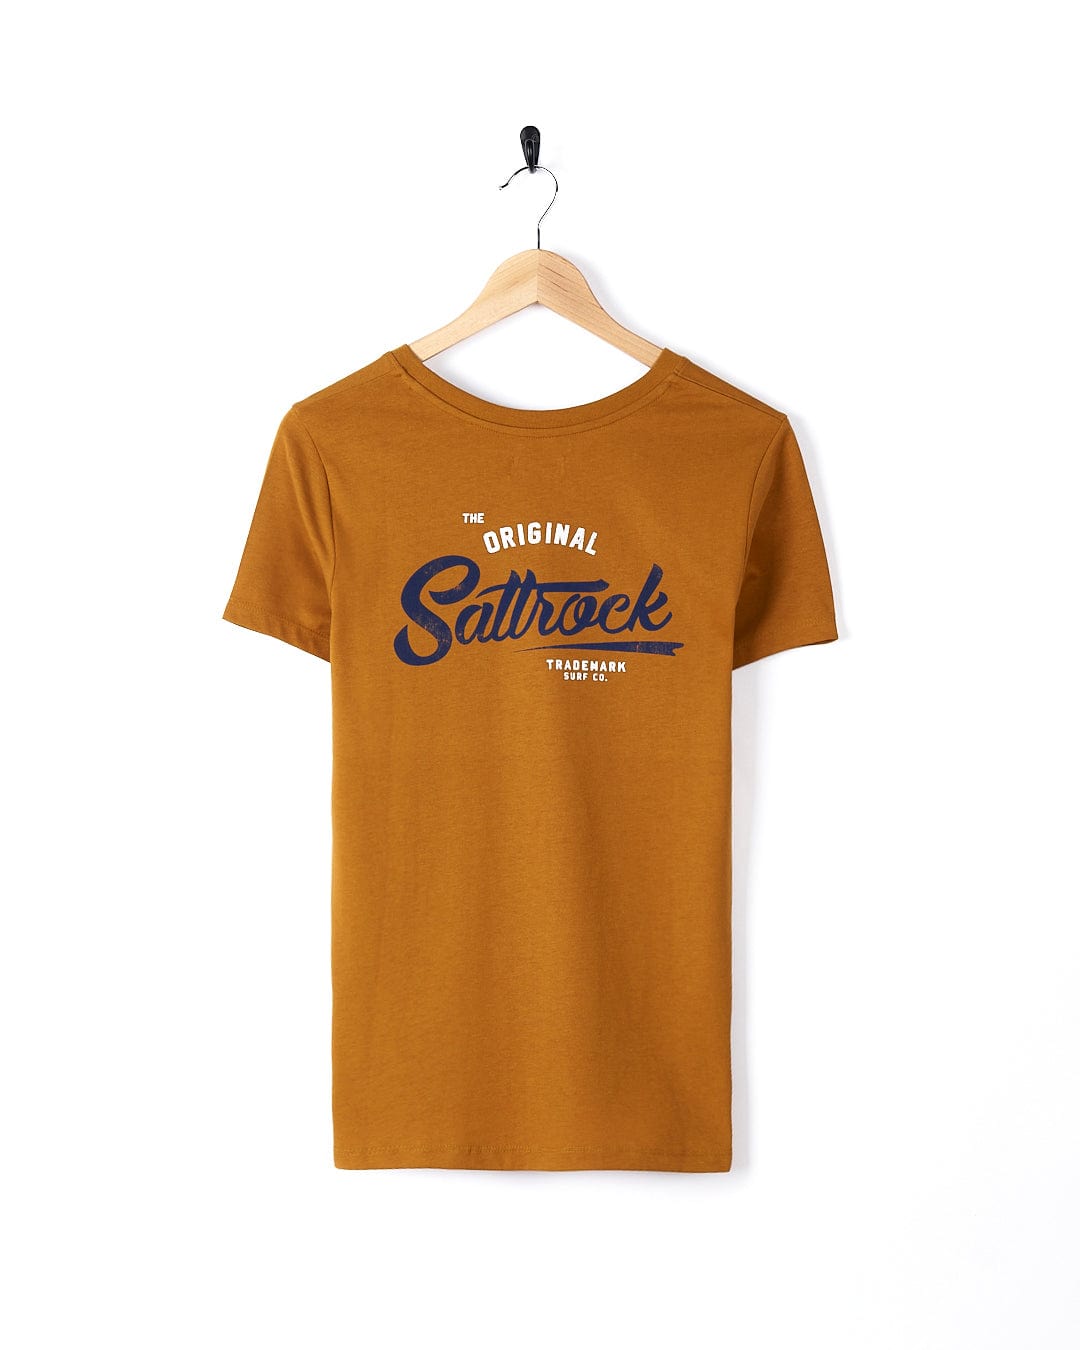 A lightweight women's t-shirt with Saltrock branding and the word "saltrock" on a Trademark - Womens Short Sleeve T-Shirt - Yellow crew neck tee.